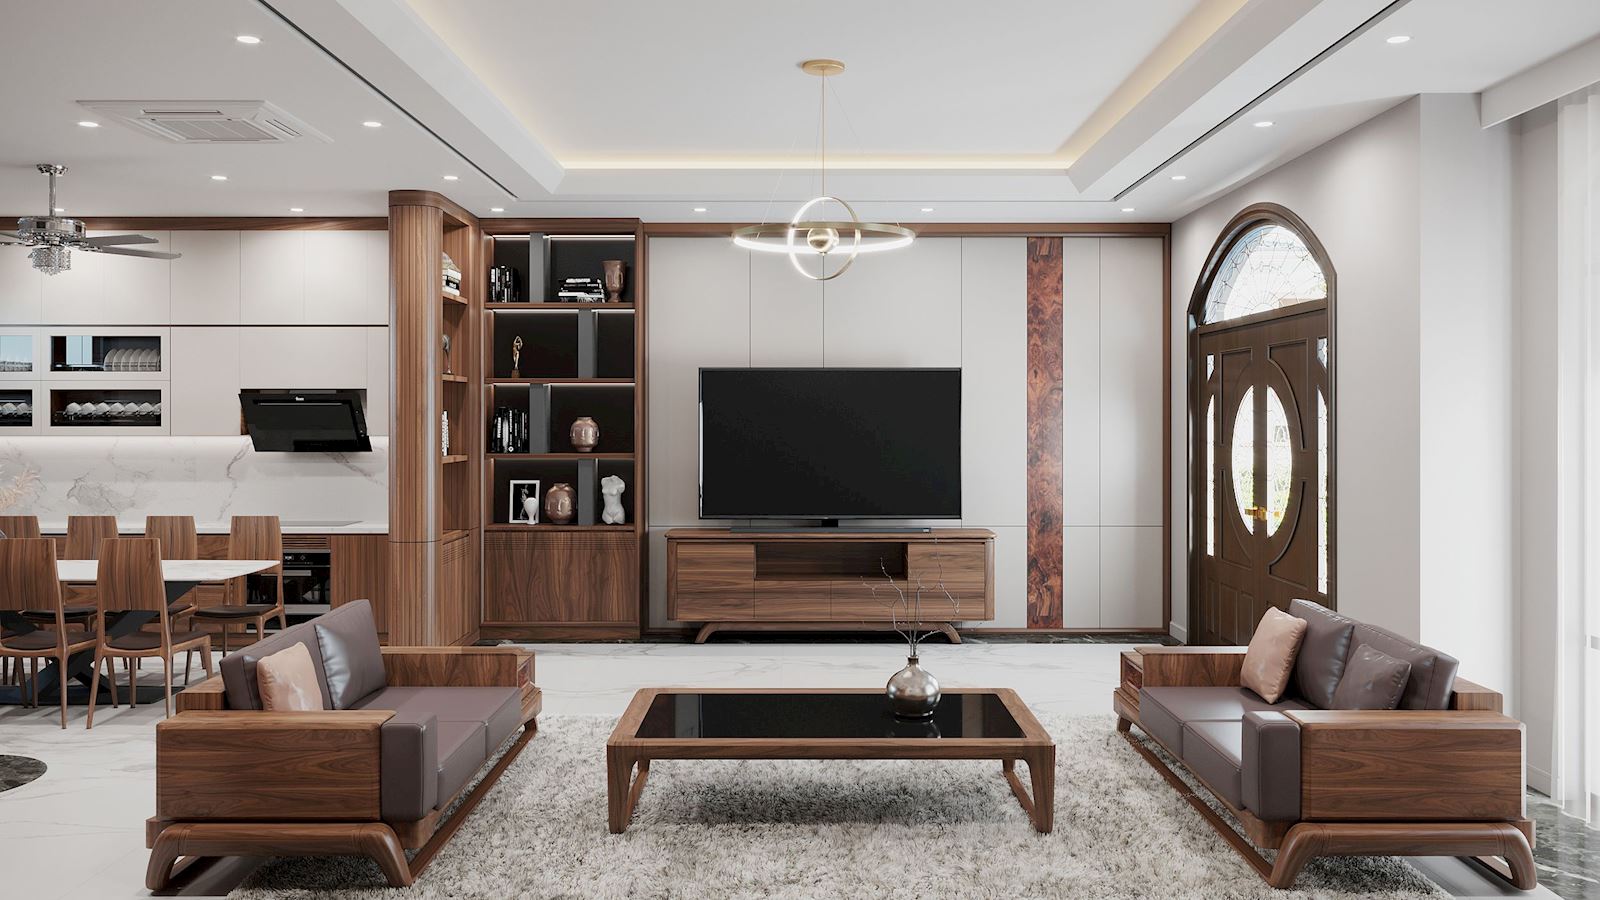 Không gian phòng khách nổi bật với bộ bàn ghế làm bằng gỗ nguyên khối nhập khẩu.